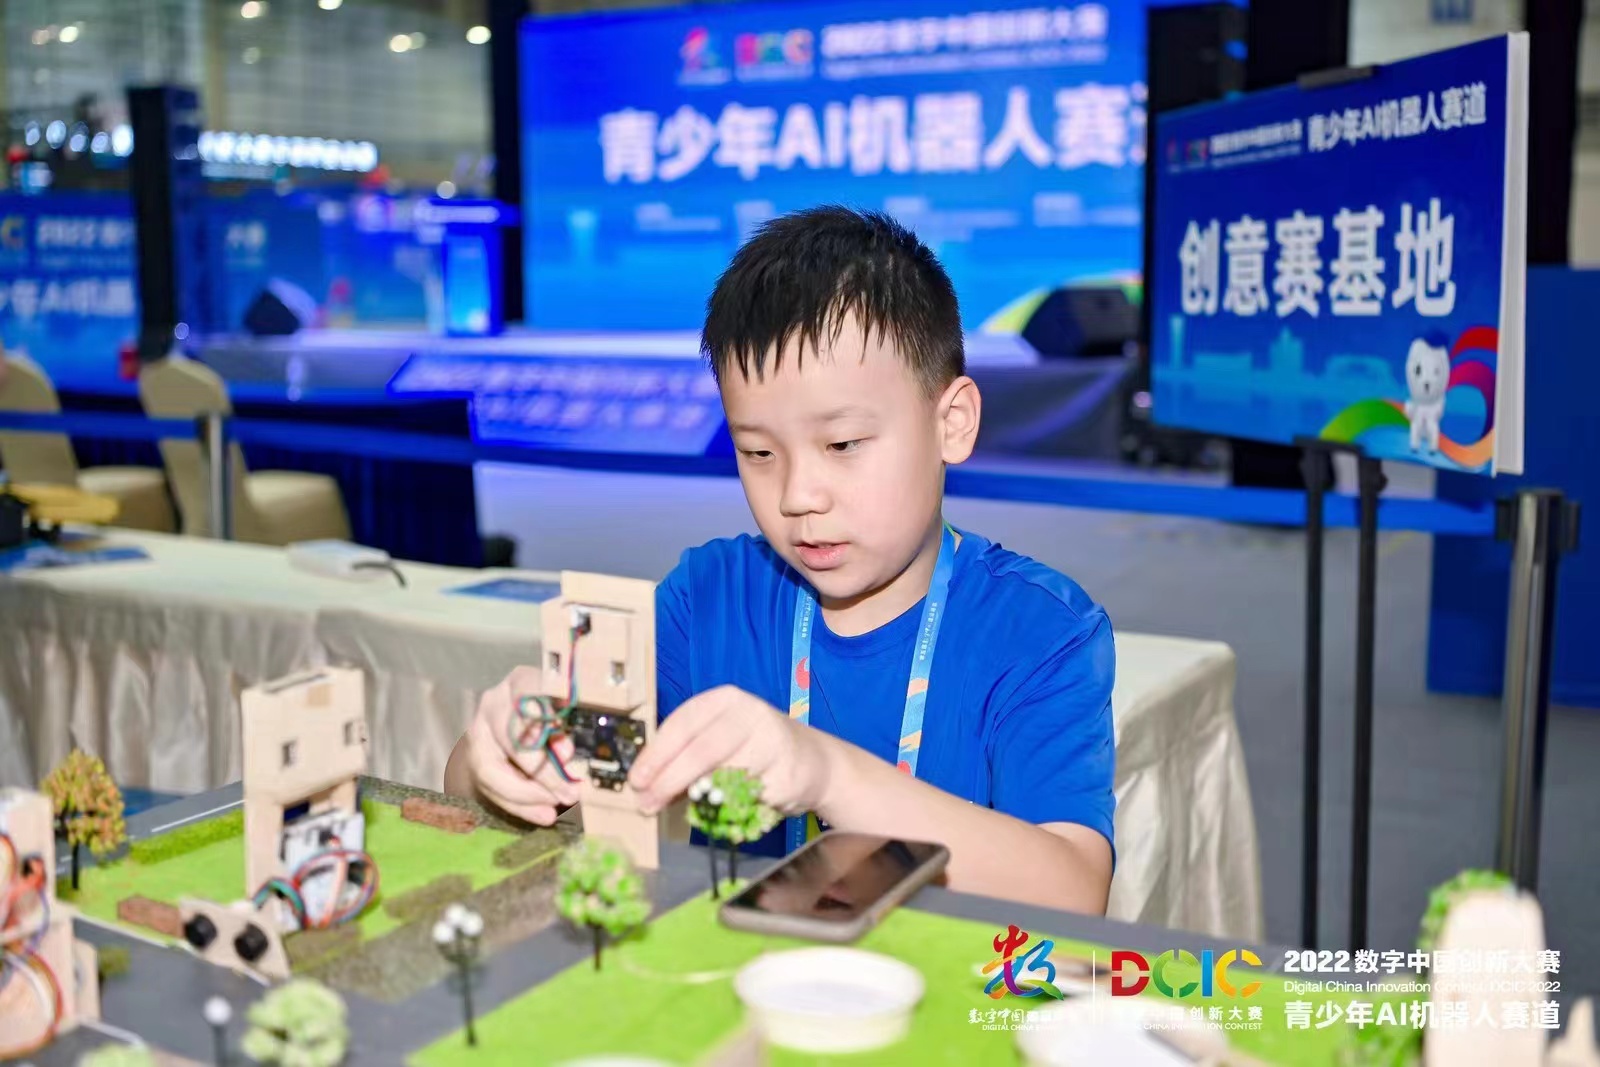 马尾小学生获数字中国创新大赛冠军